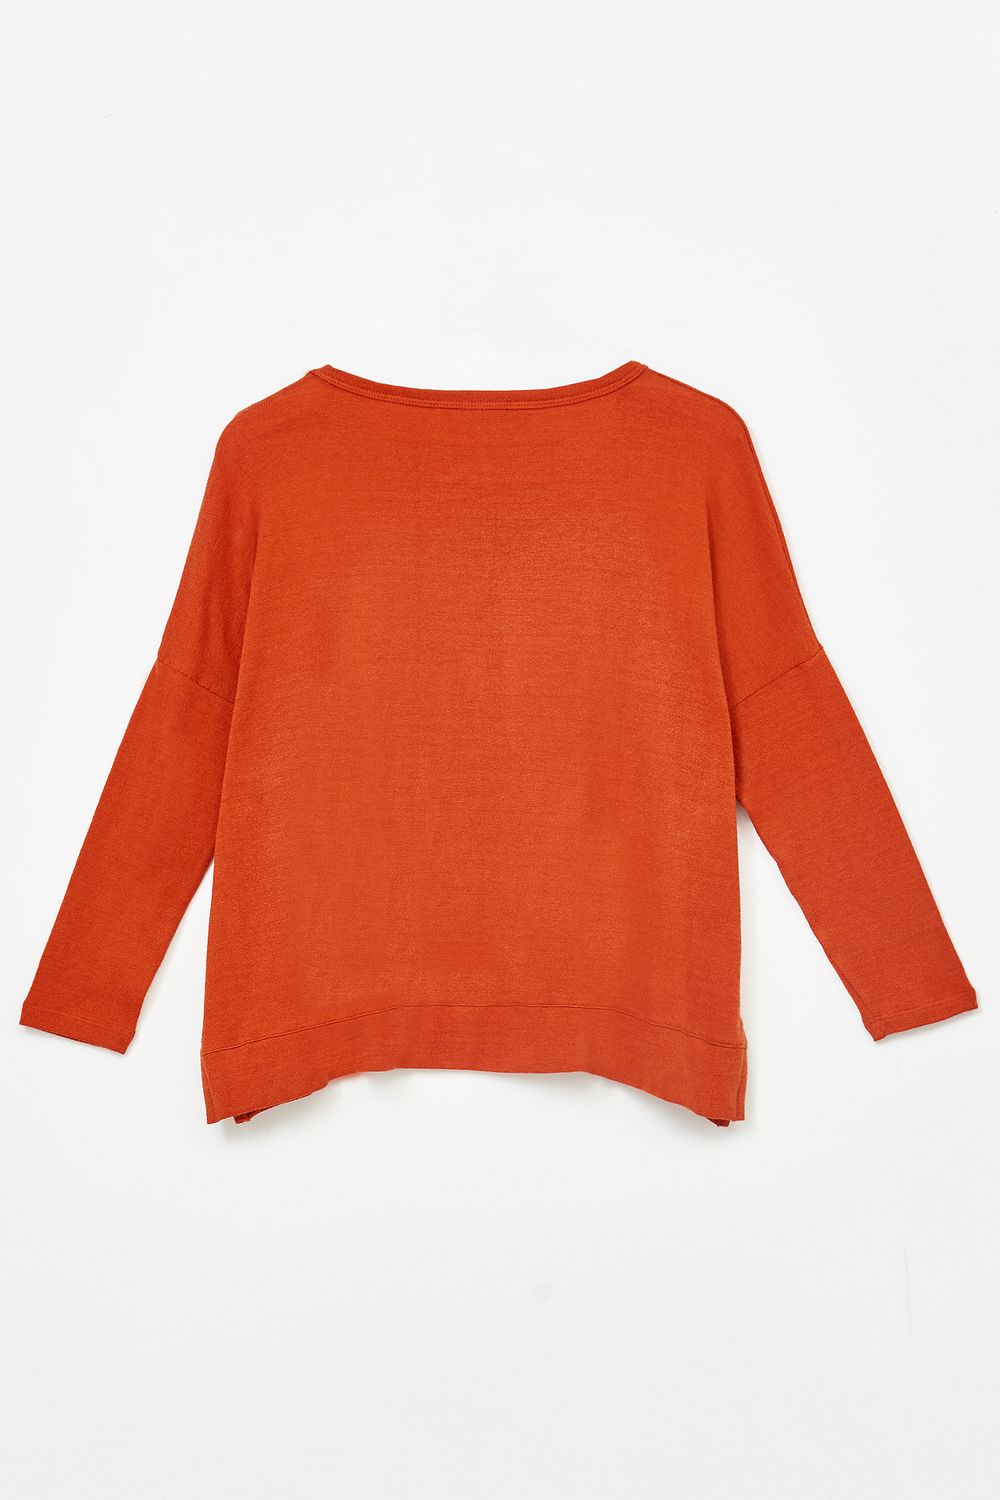 Sweater-Marruecos-Ladrillo--46